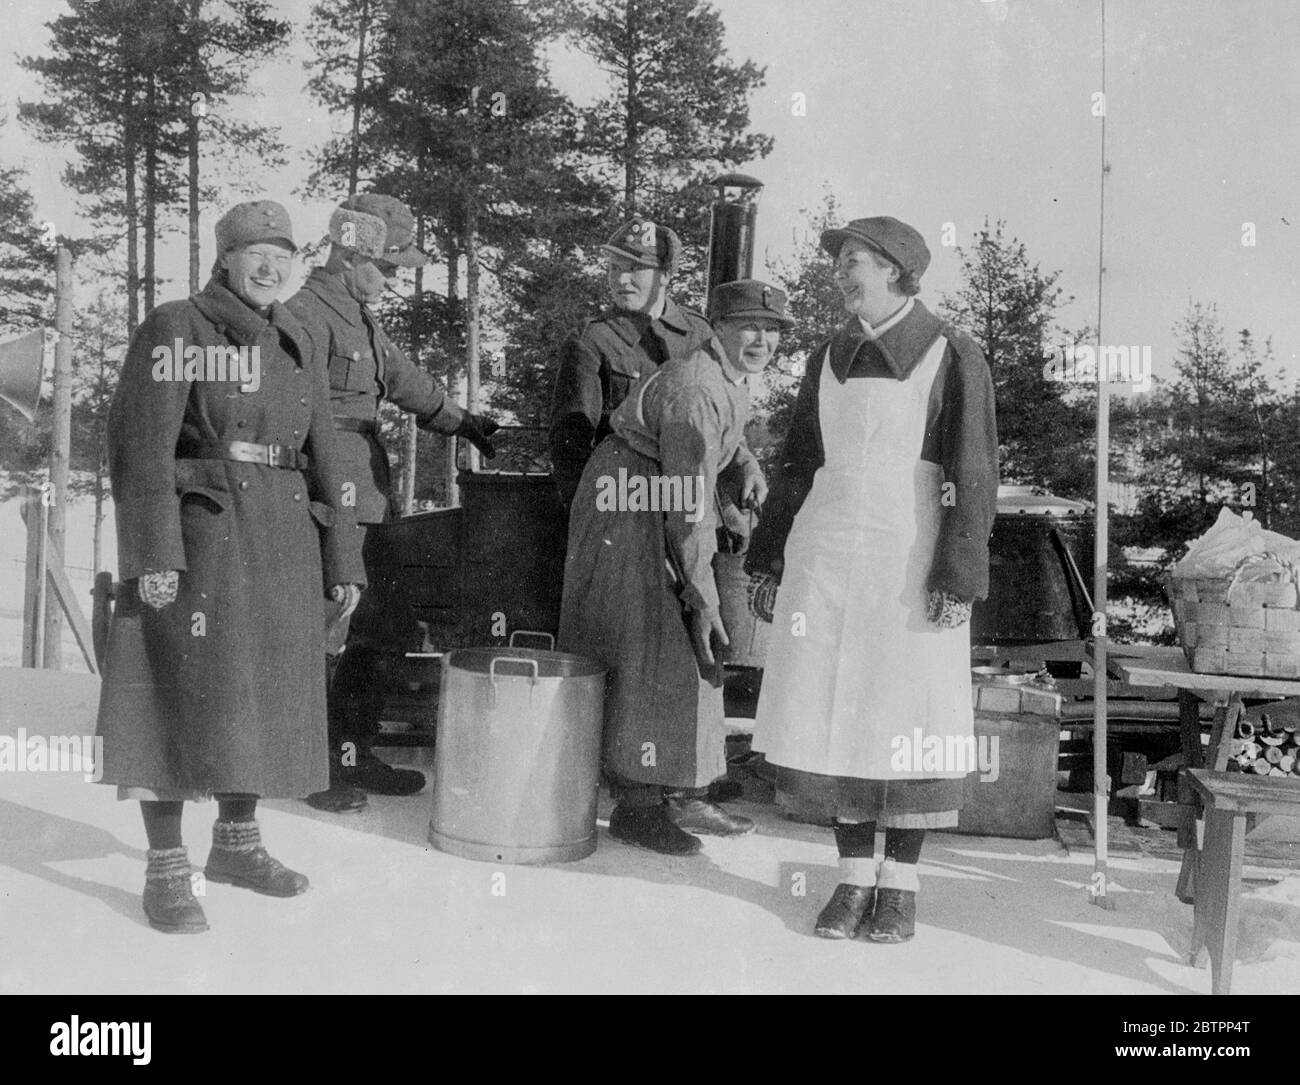 Frauen "Soldiers" von Finnland. Sie kochen in einer Feldküche! Die uniformierten Mitglieder der finnischen Frauenpatriotischen Organisation "Lottas" nutzen eine Feldküche, um die weibliche Pflicht zu erfüllen oder um den Wettkäfern der Ski-Weltmeisterschaften in Lahti, Finnland, Nahrung zuzubereiten. Eine der Frauen trägt eine Schürze über ihrem Mantel. 26 Februar 26 1938 Stockfoto